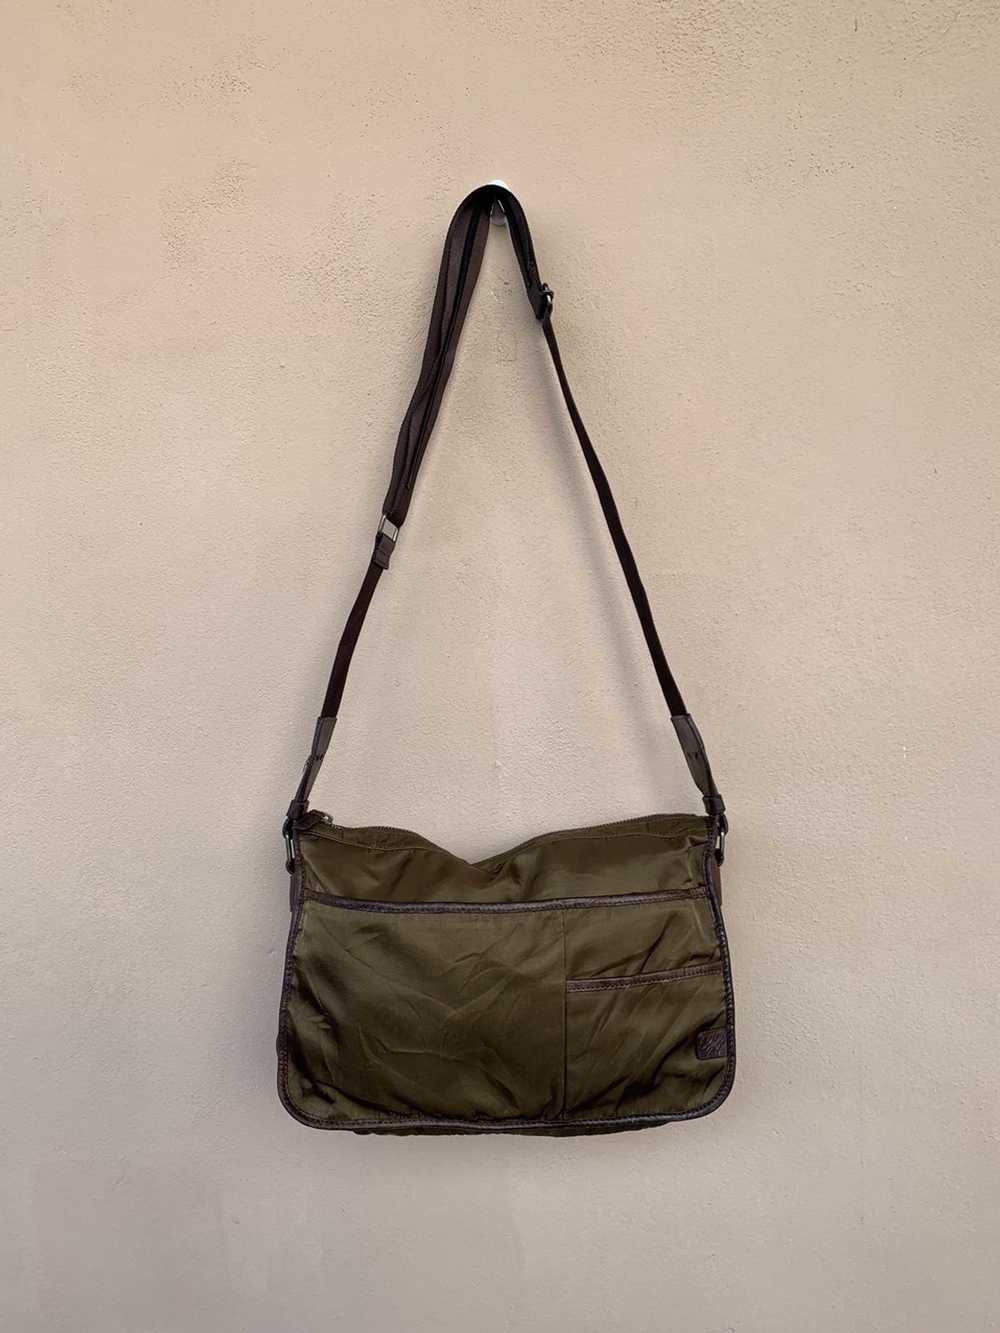 Agnes B. × Rare Agnes B sling bag nice design - image 1